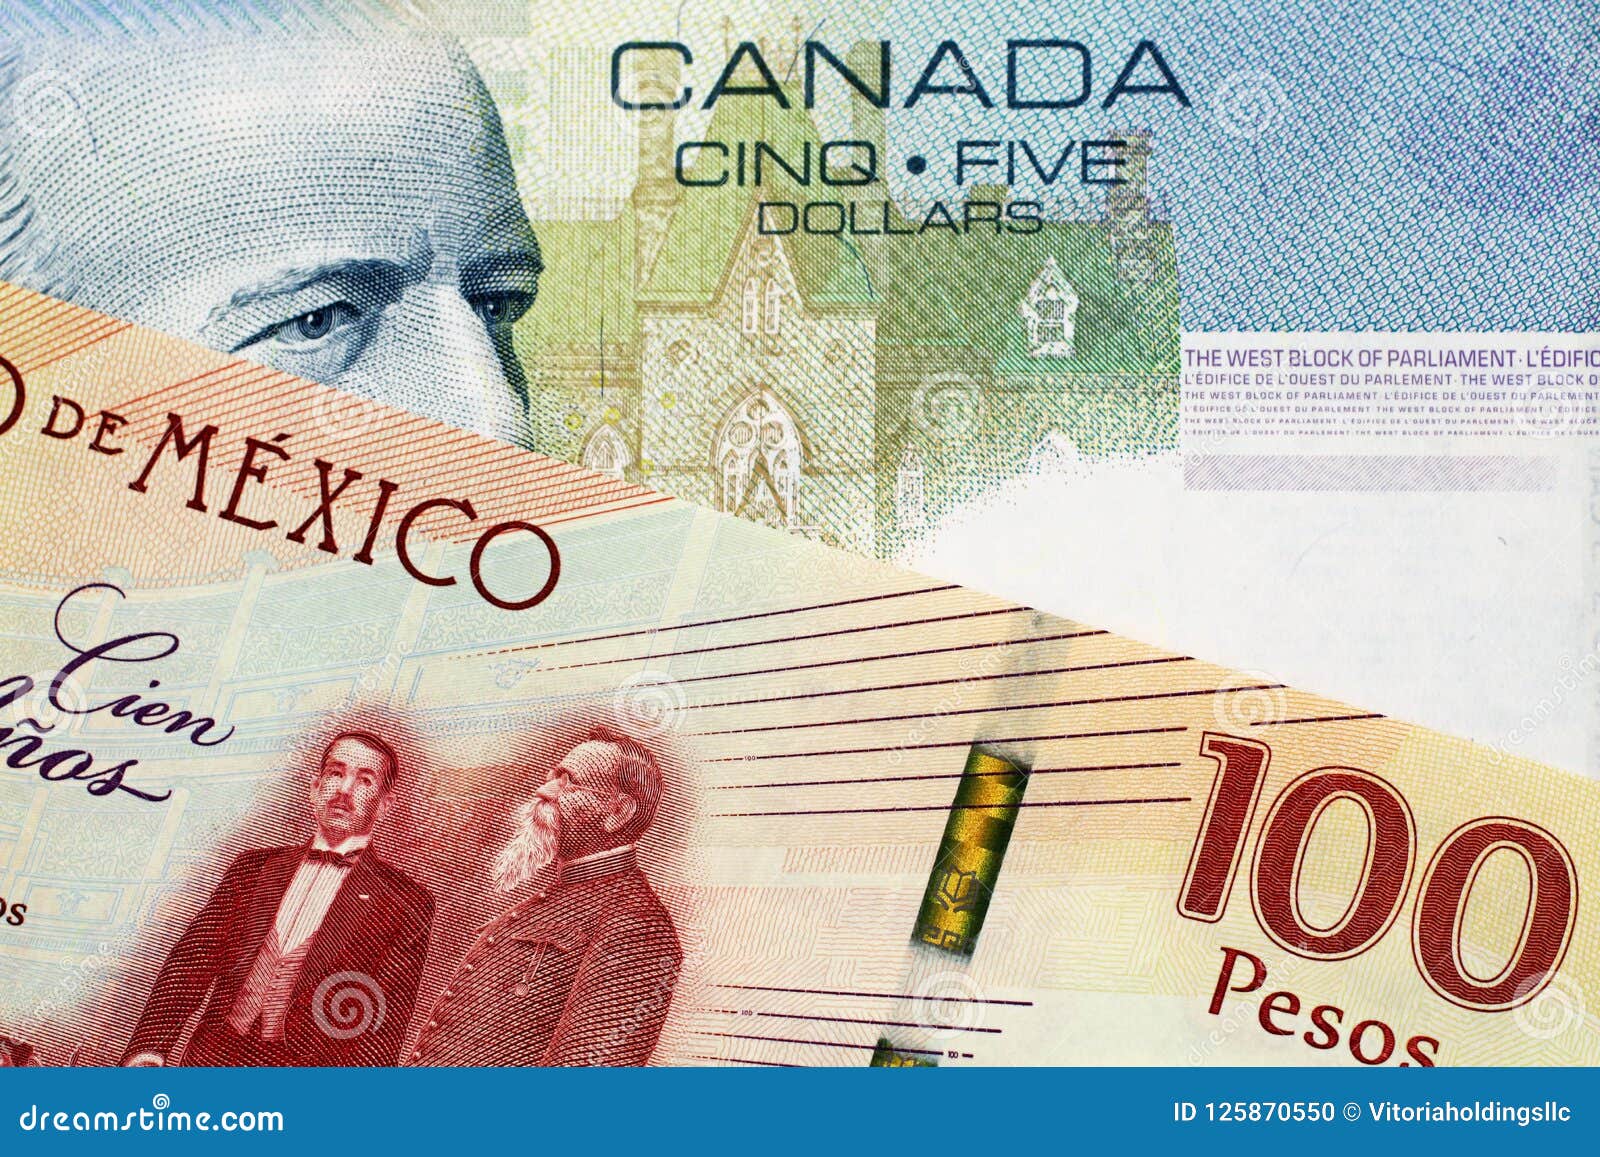 100 pesos to canadian